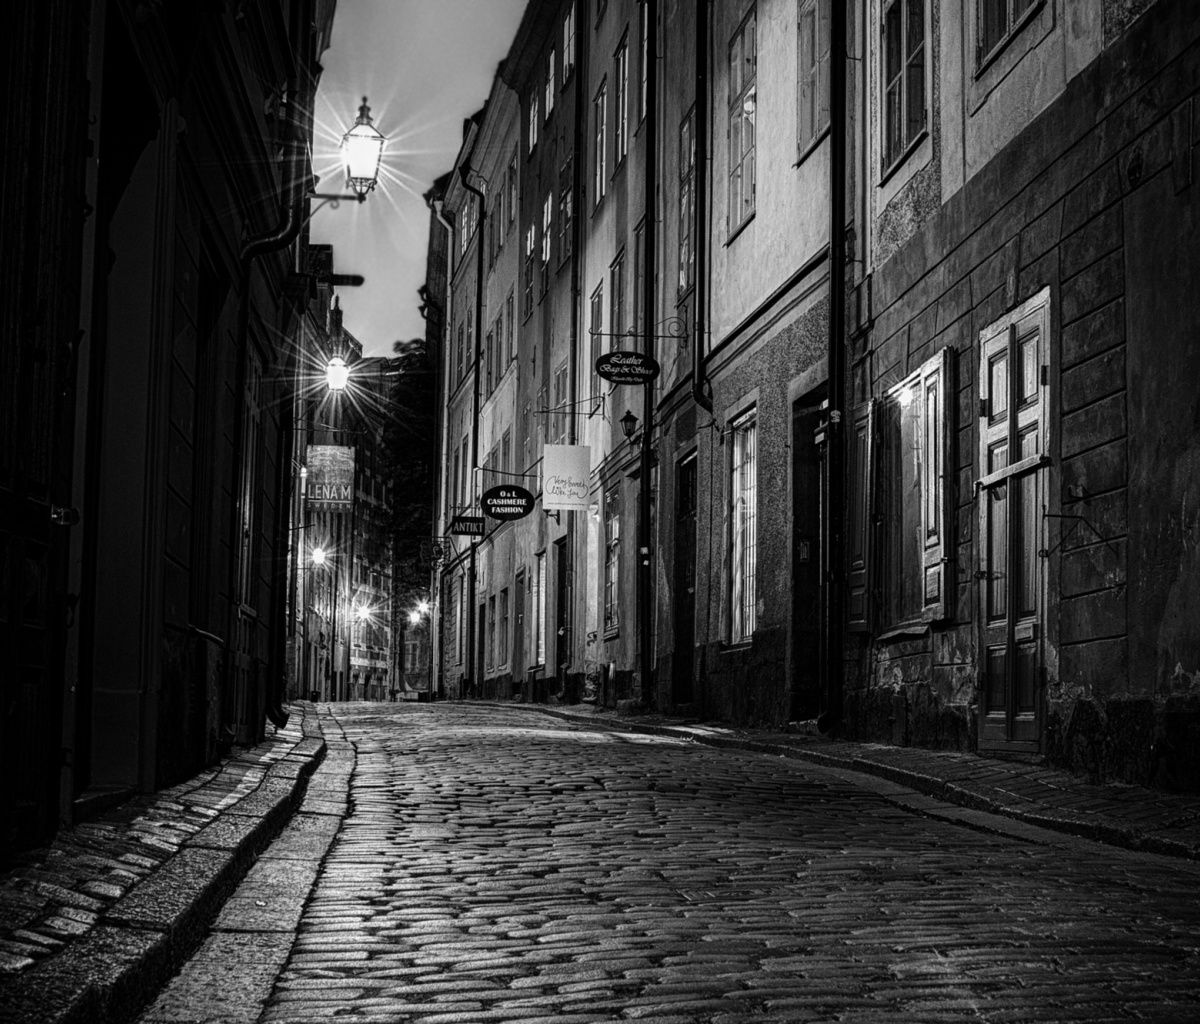 Sverige, Sett paving street in Stockholm screenshot #1 1200x1024